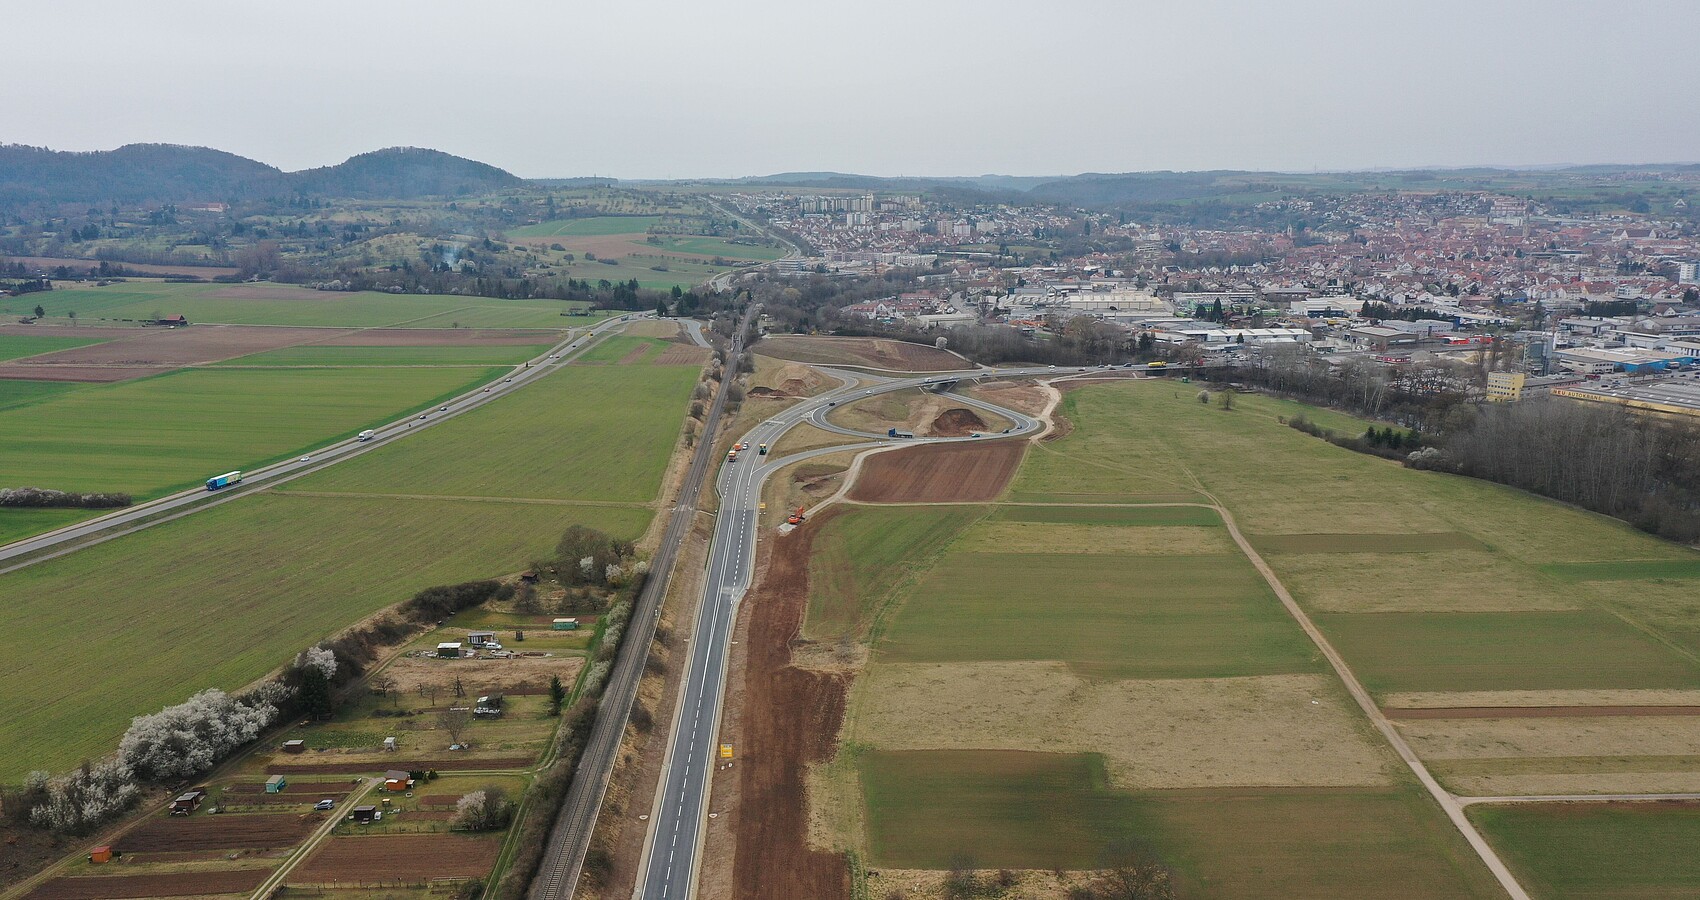 Luftbild der B 28 neu zwischen Tübingen Rottenburg; man sieht die B 28 und angrenzende Äcker, Wiesen und Felder und im Hintergrund Rottenburg